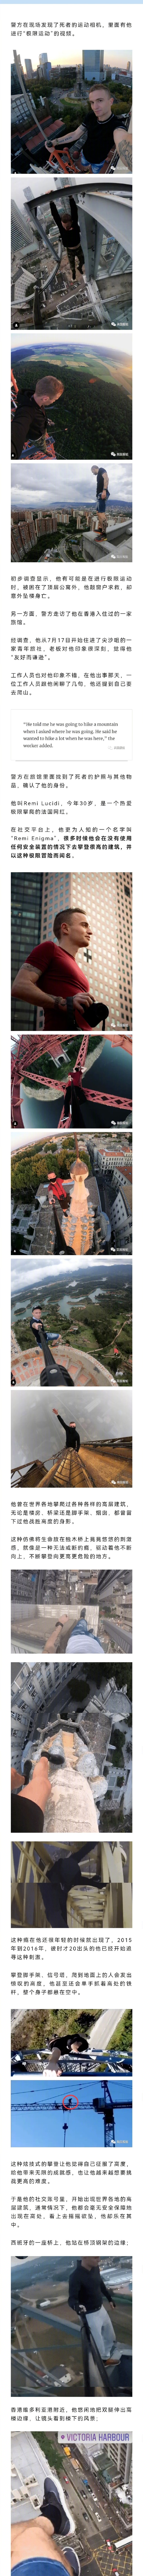 法国网红爬中国香港68楼天台后坠亡